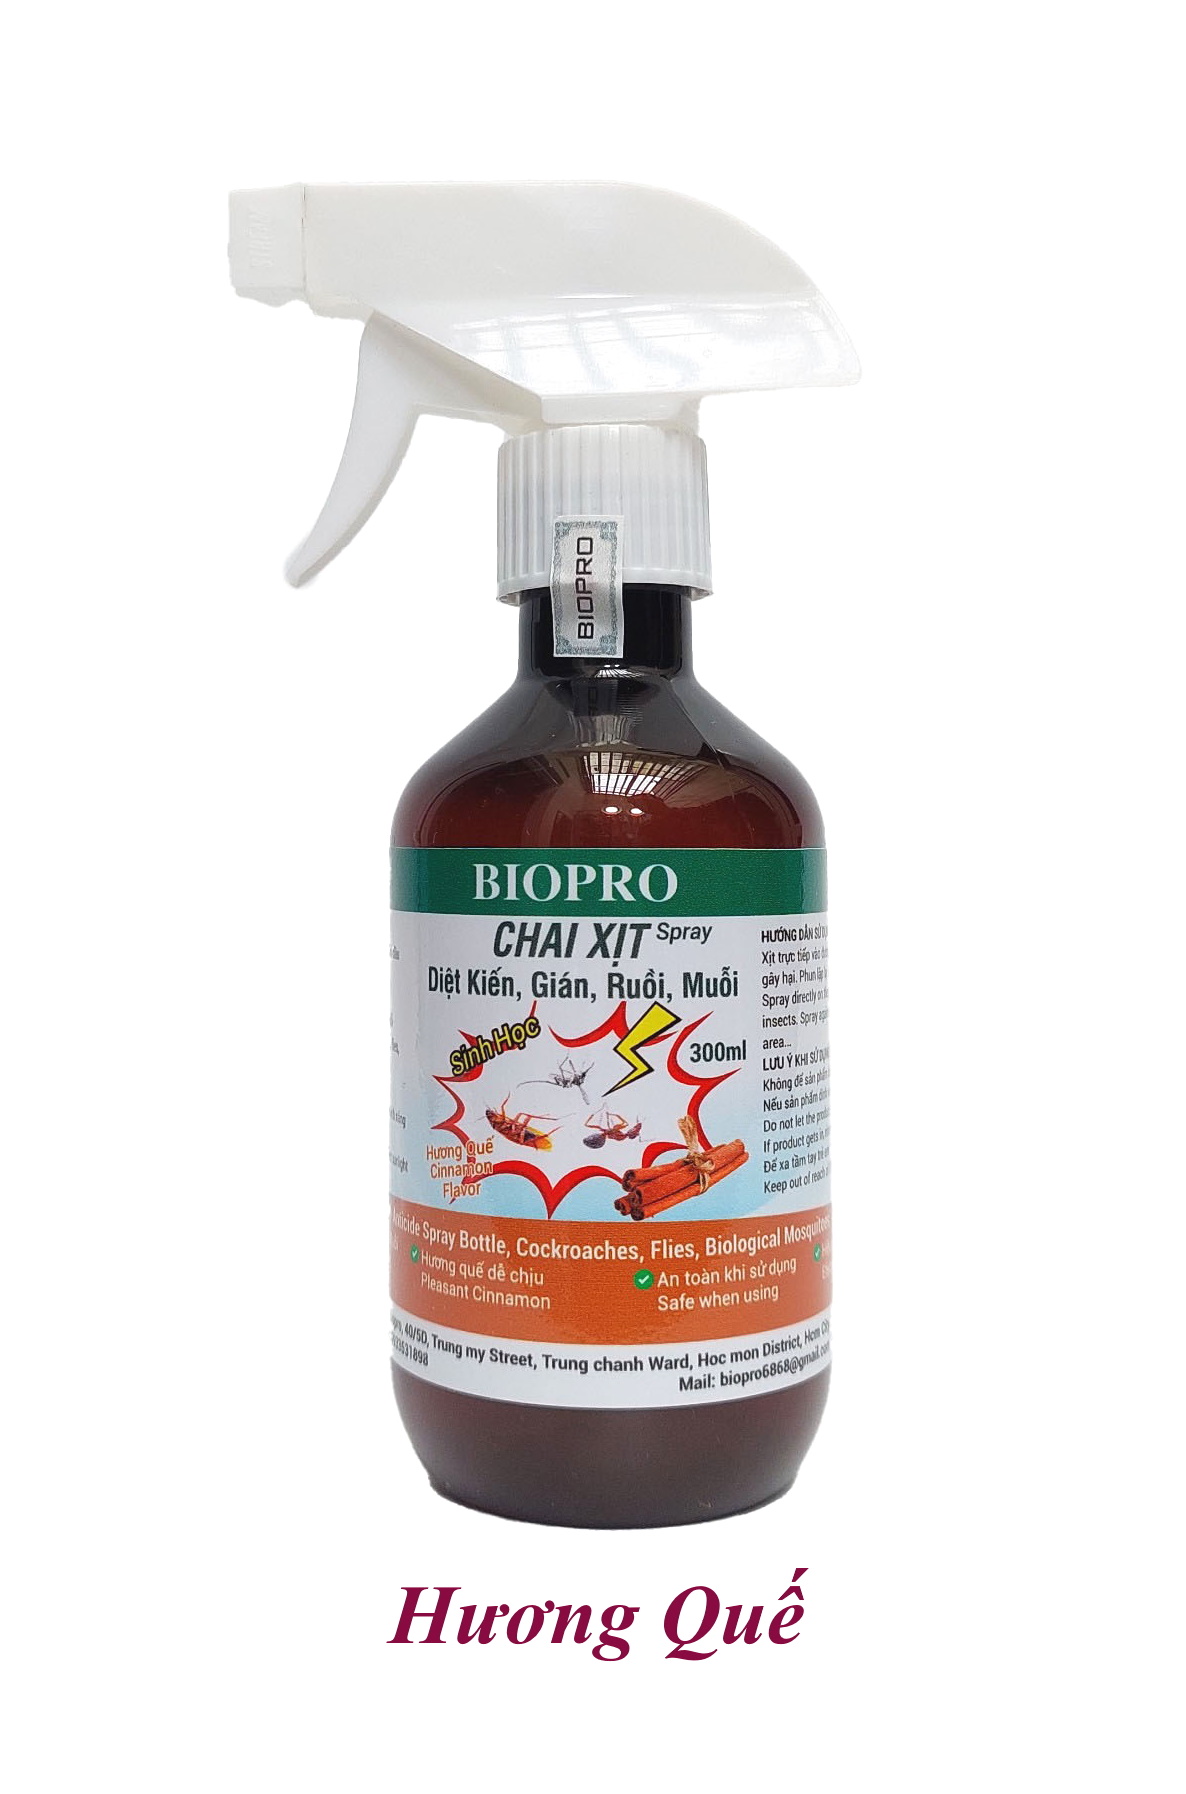 Thuốc xịt sinh học Diệt kiến Diệt gián Diệt ruồi Diệt muỗi Biopro Hương quế dịu nhẹ, an toàn, hiệu quả dài lâu